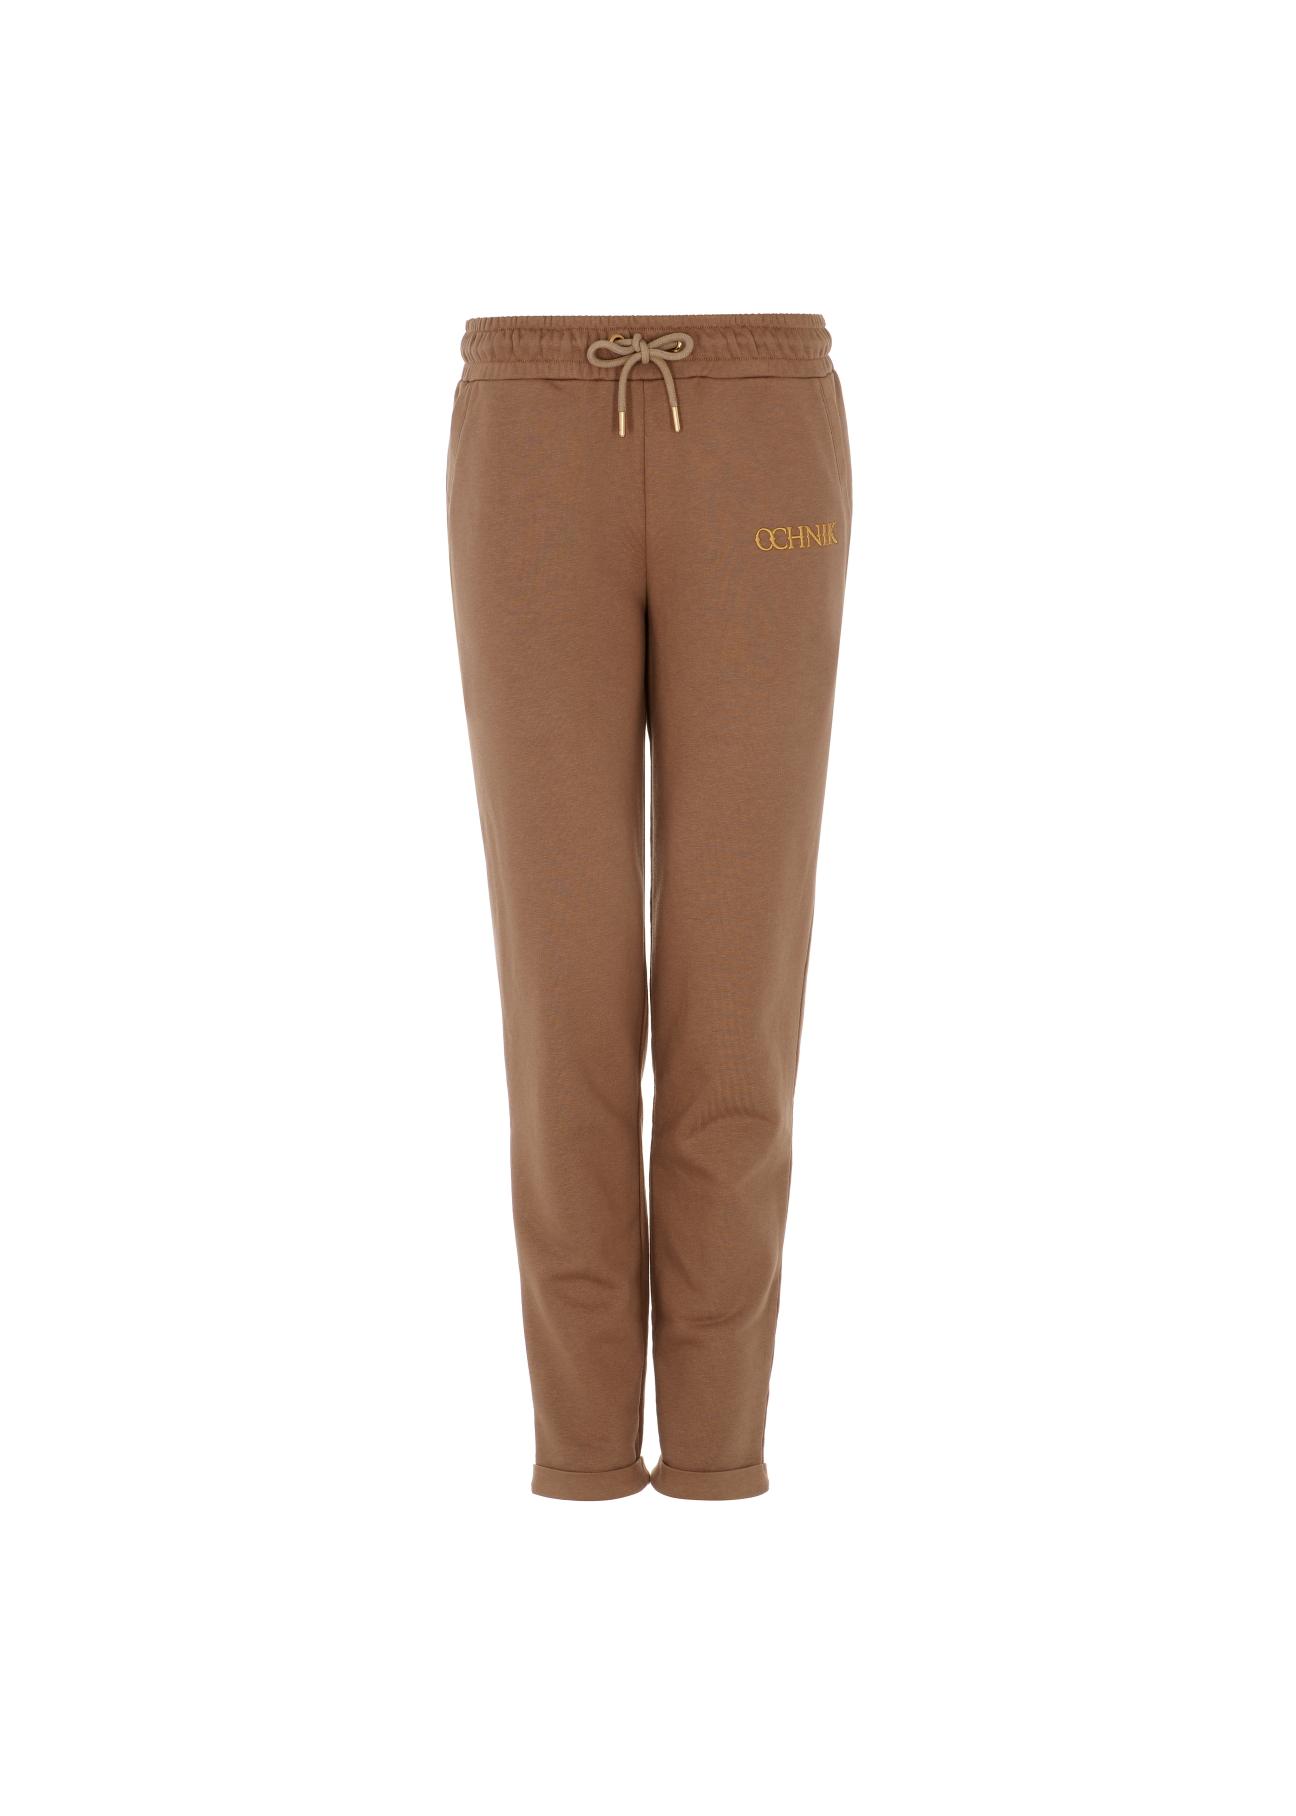 Brązowe spodnie dresowe damskie SPODT-0065-81(Z22)